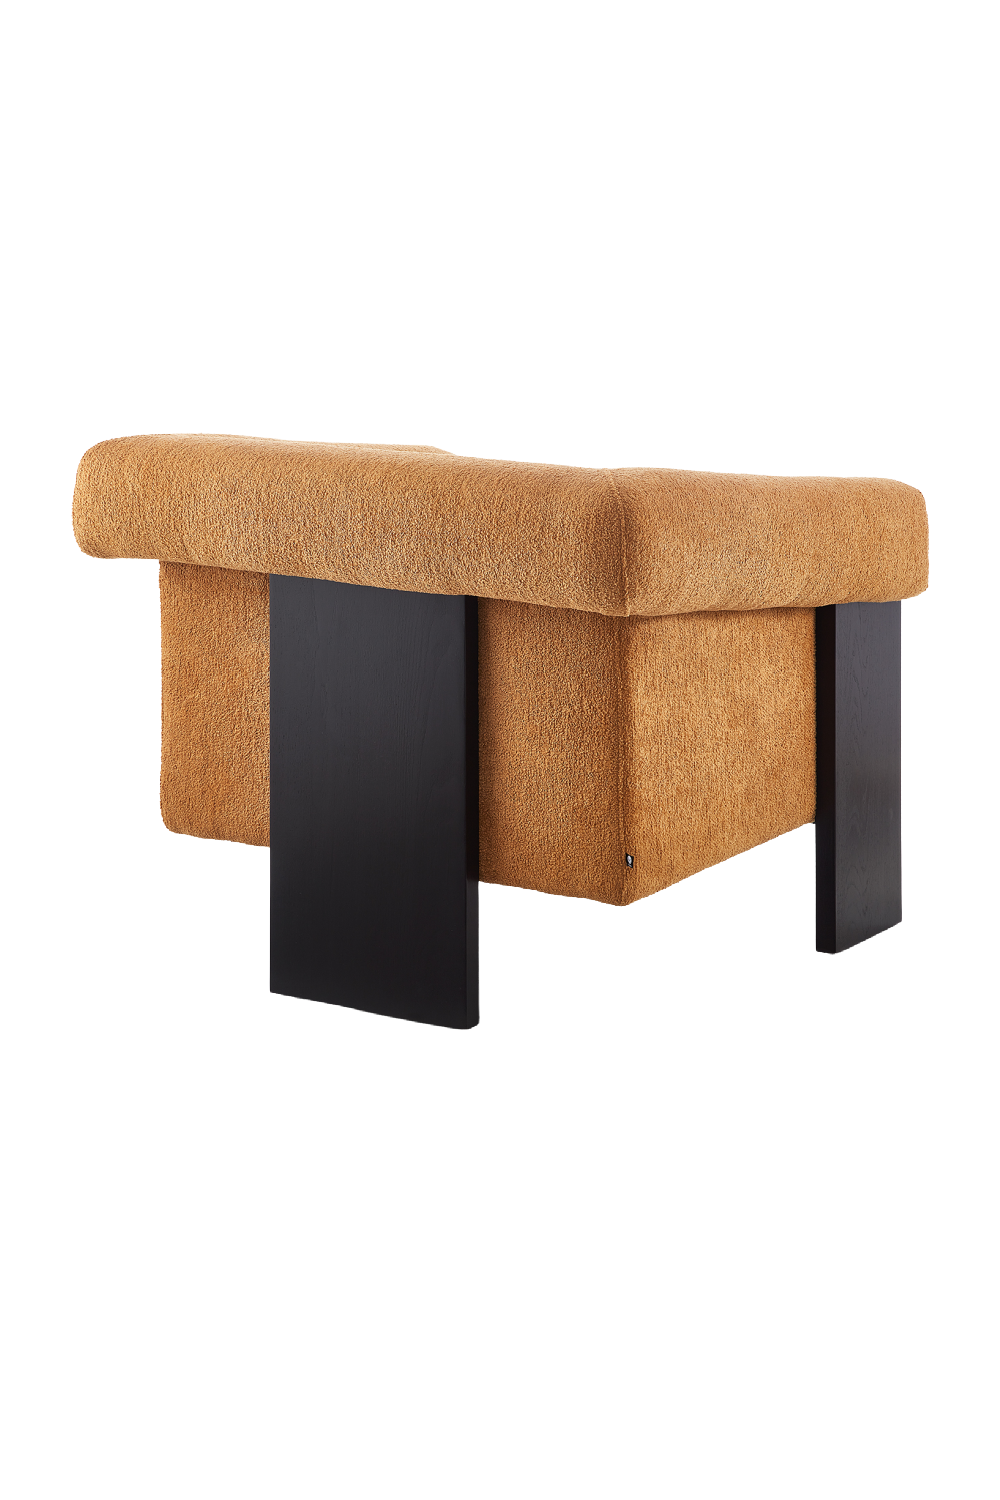 Modern Urban Occasional Chair | Liang & Eimil Maplin | Oroa.com